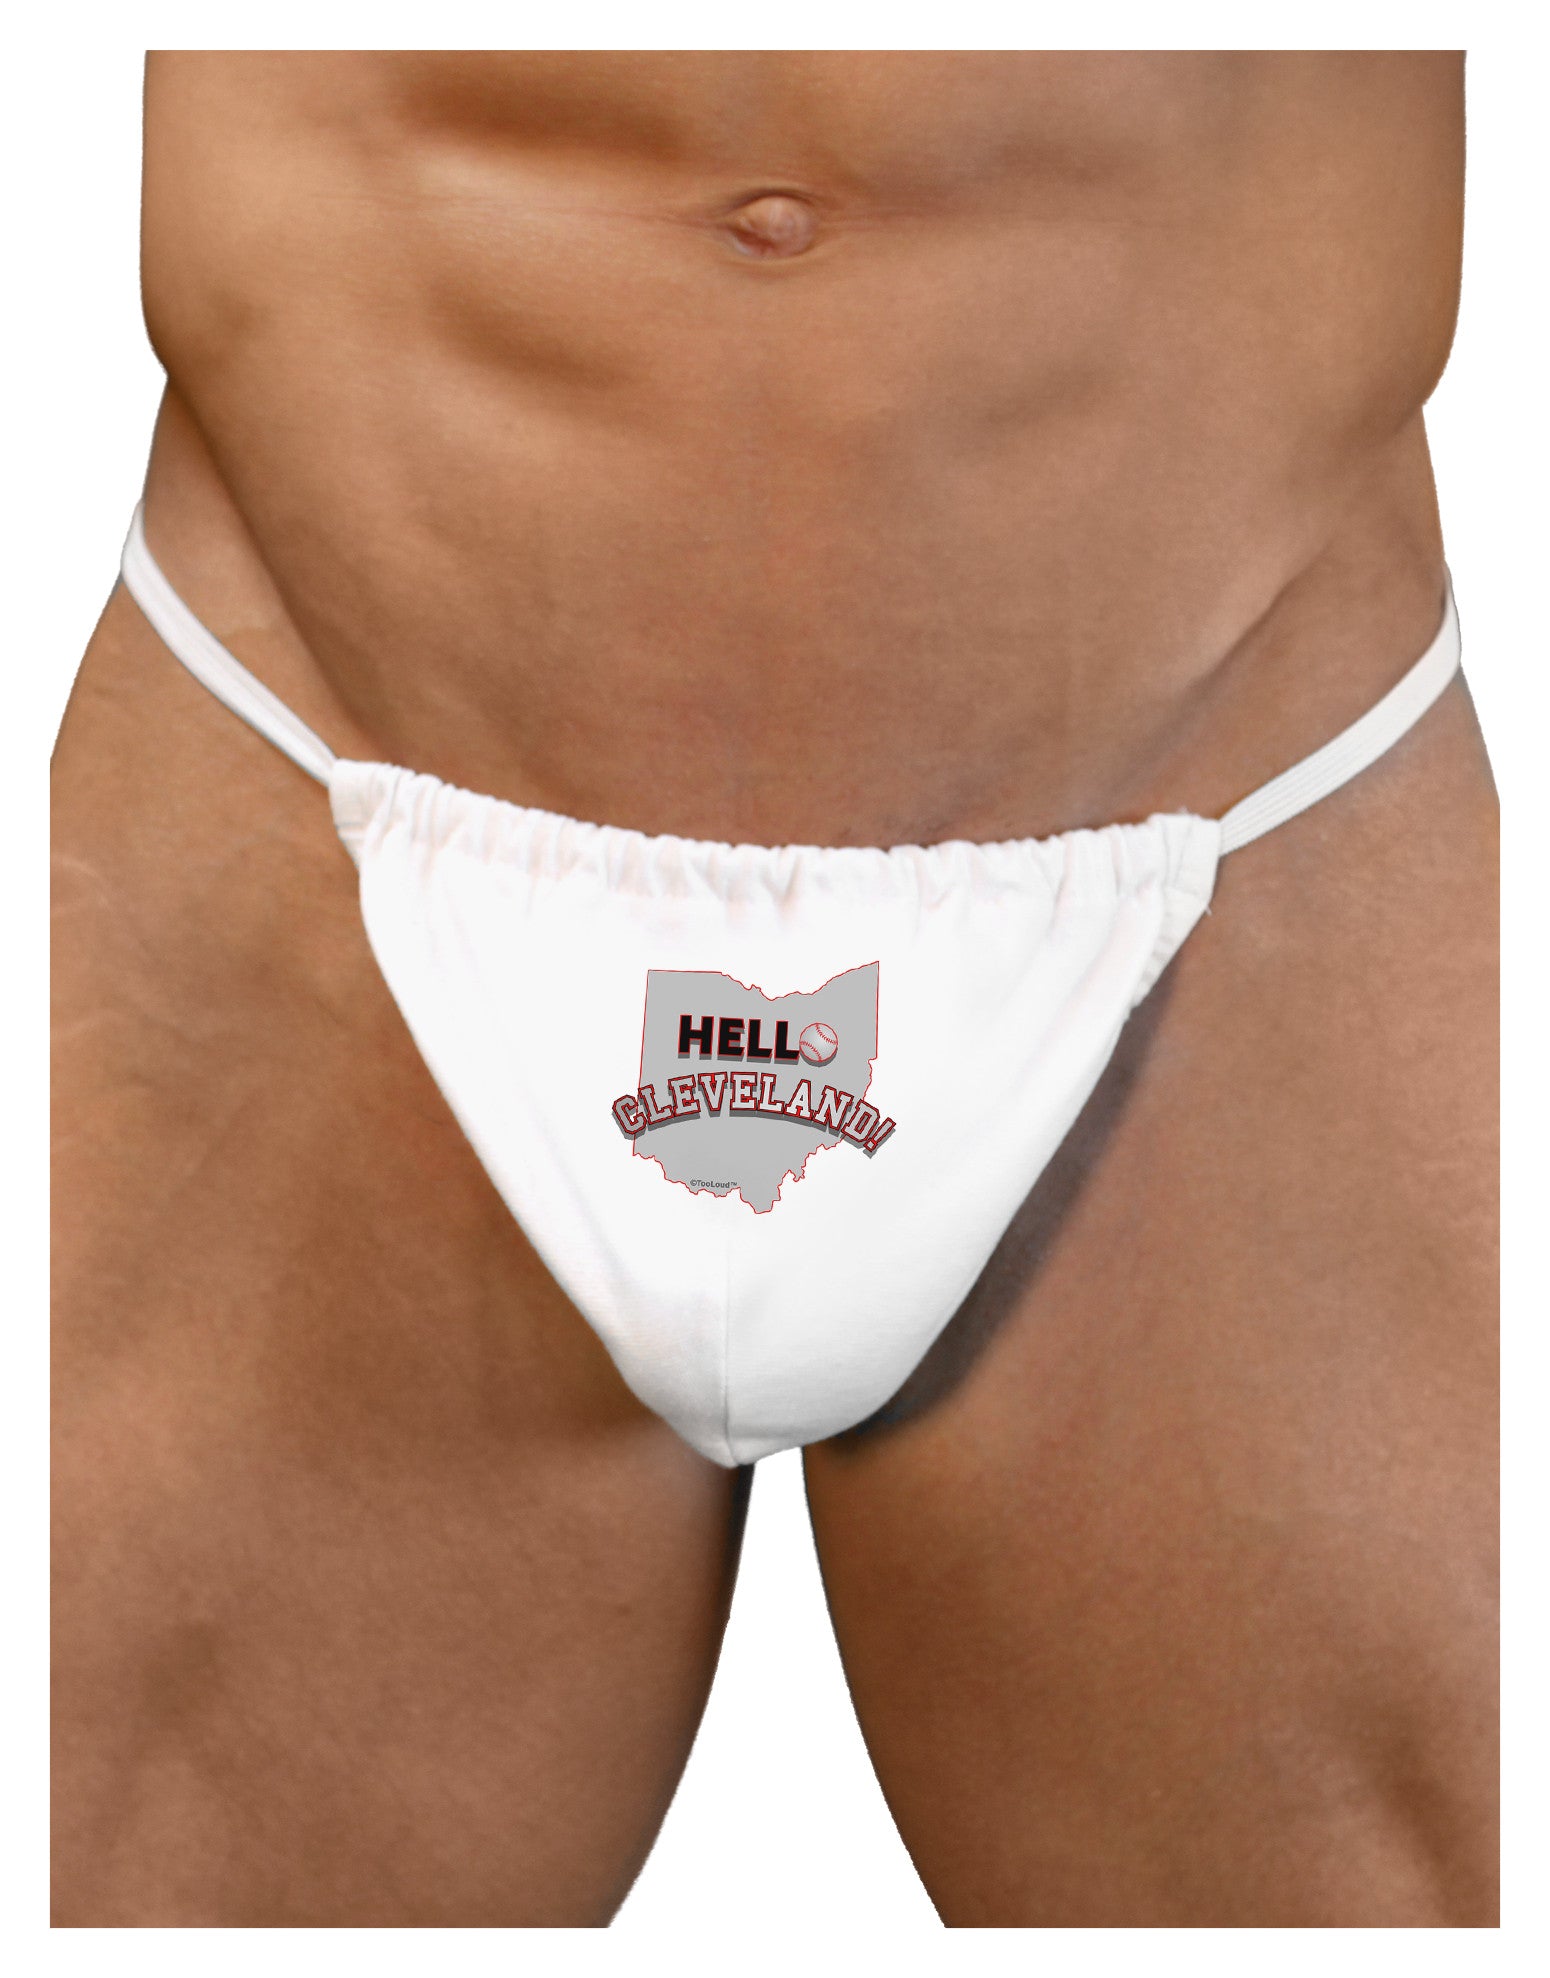 Hello Cleveland Mens G-String Underwear - Davson Sales